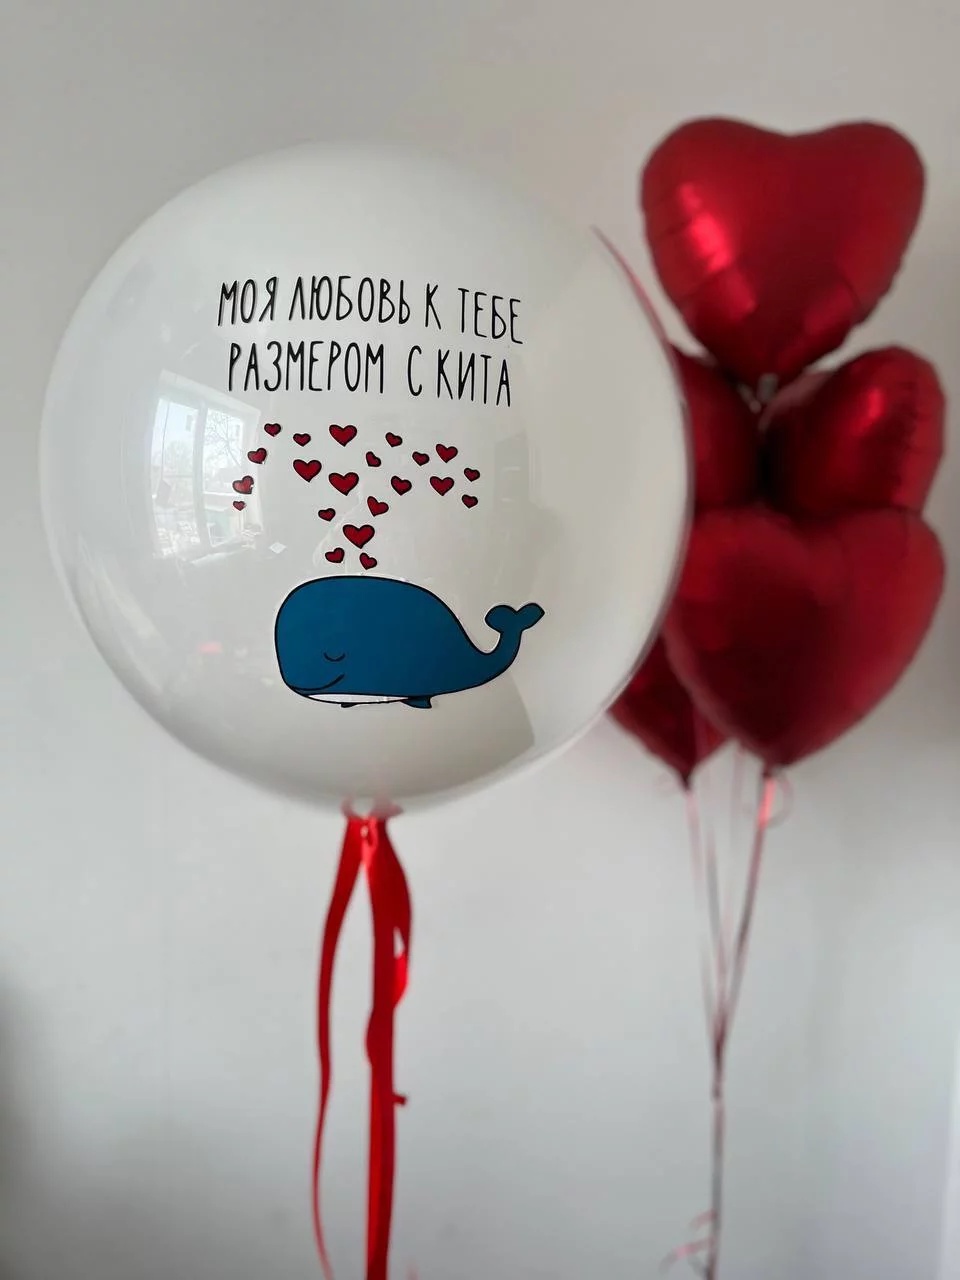 Моя любовь к тебе размером с кита! - 3 250 ₽, заказать онлайн.